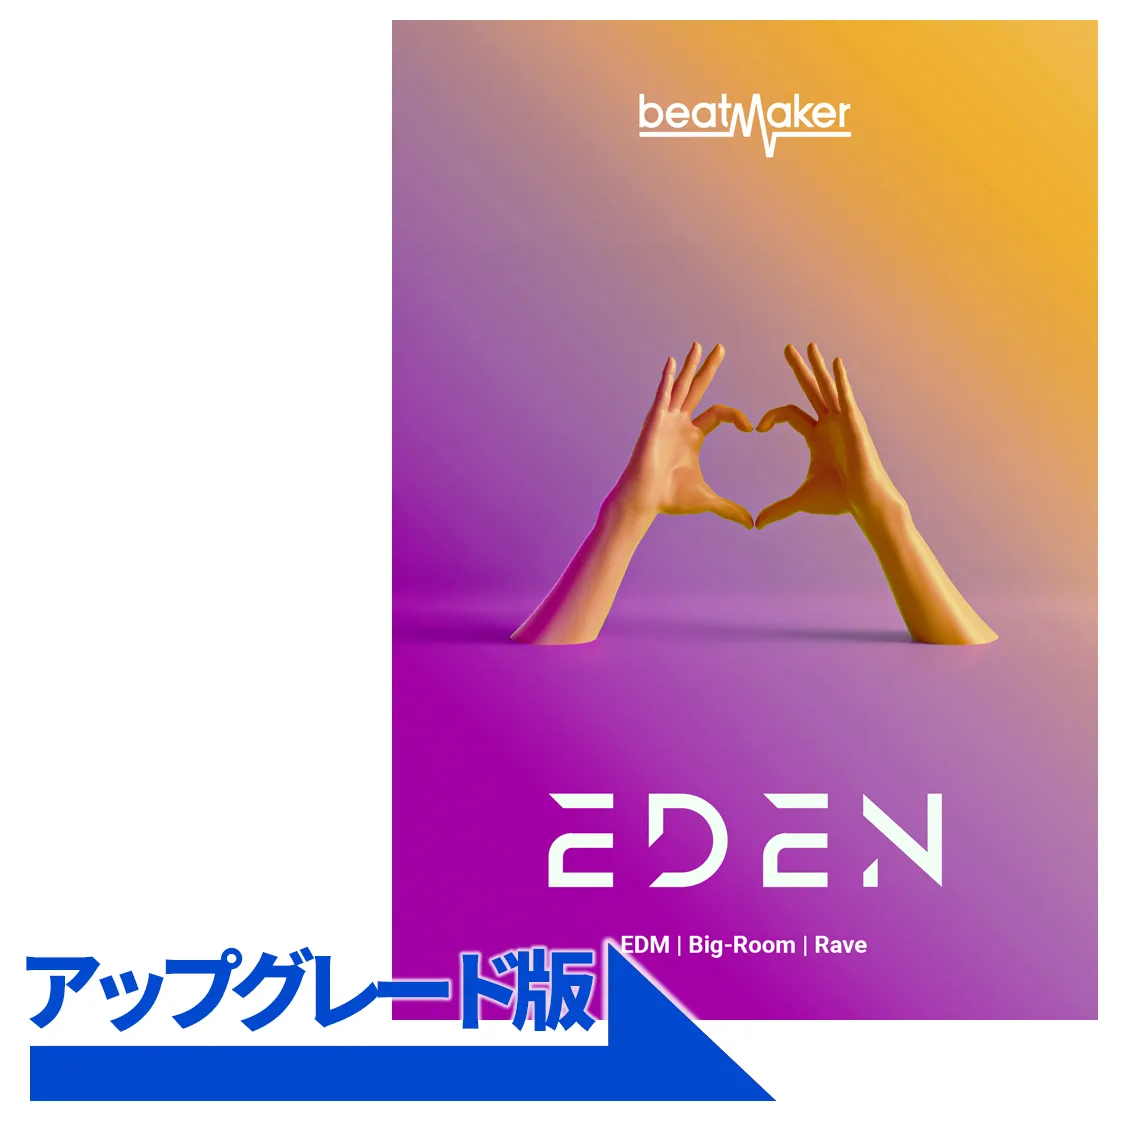 Beatmaker Eden アップグレード版